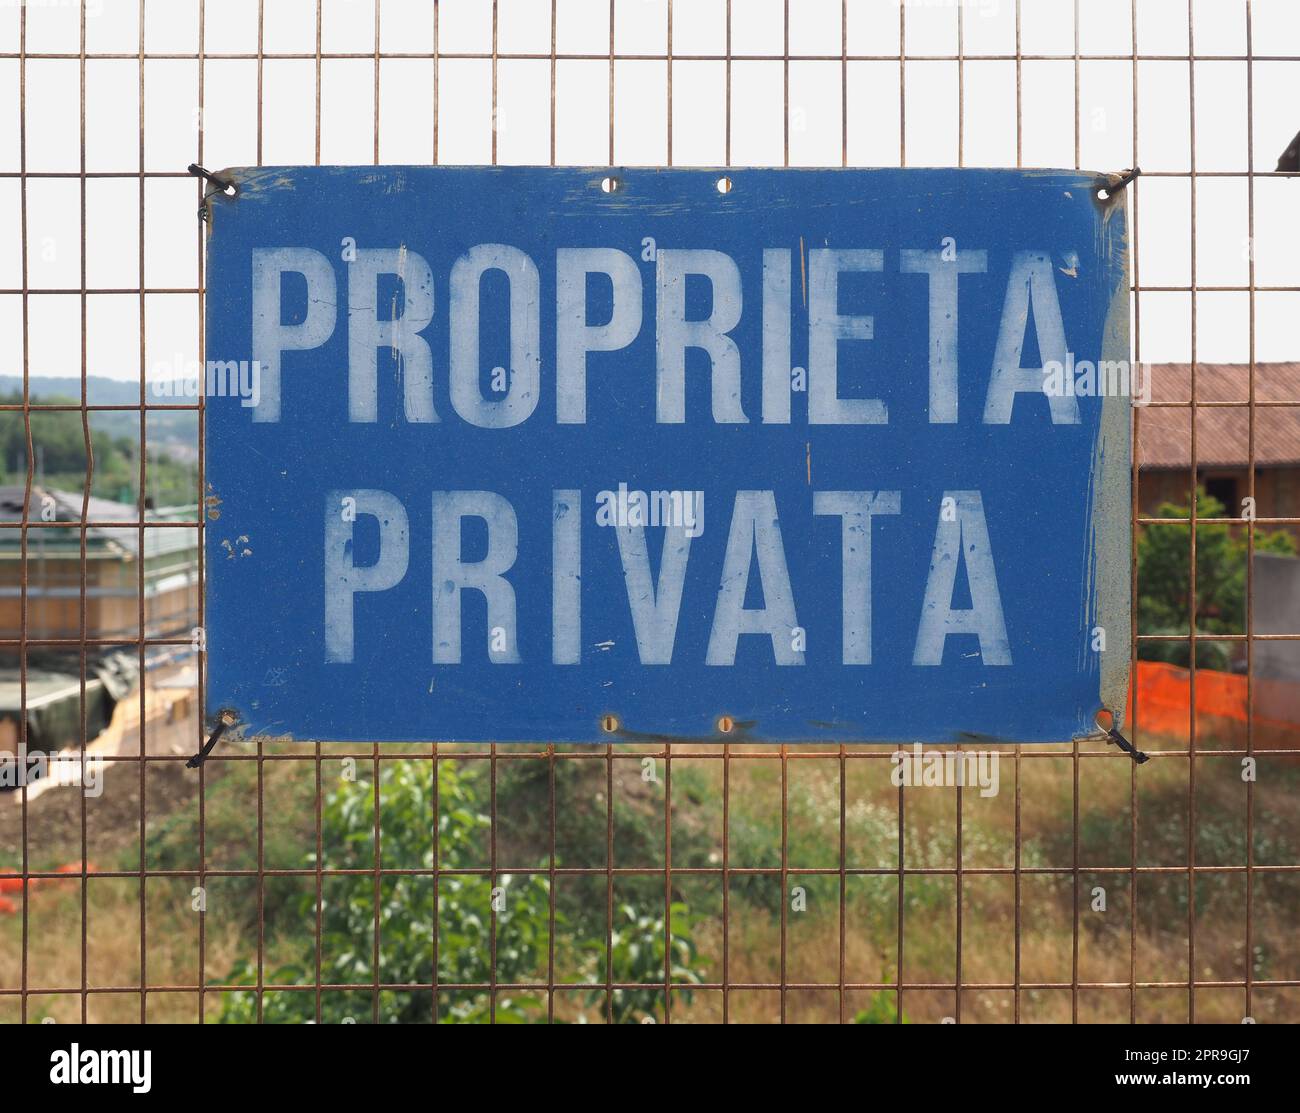 Proprieta privata transl. Private property Stock Photo